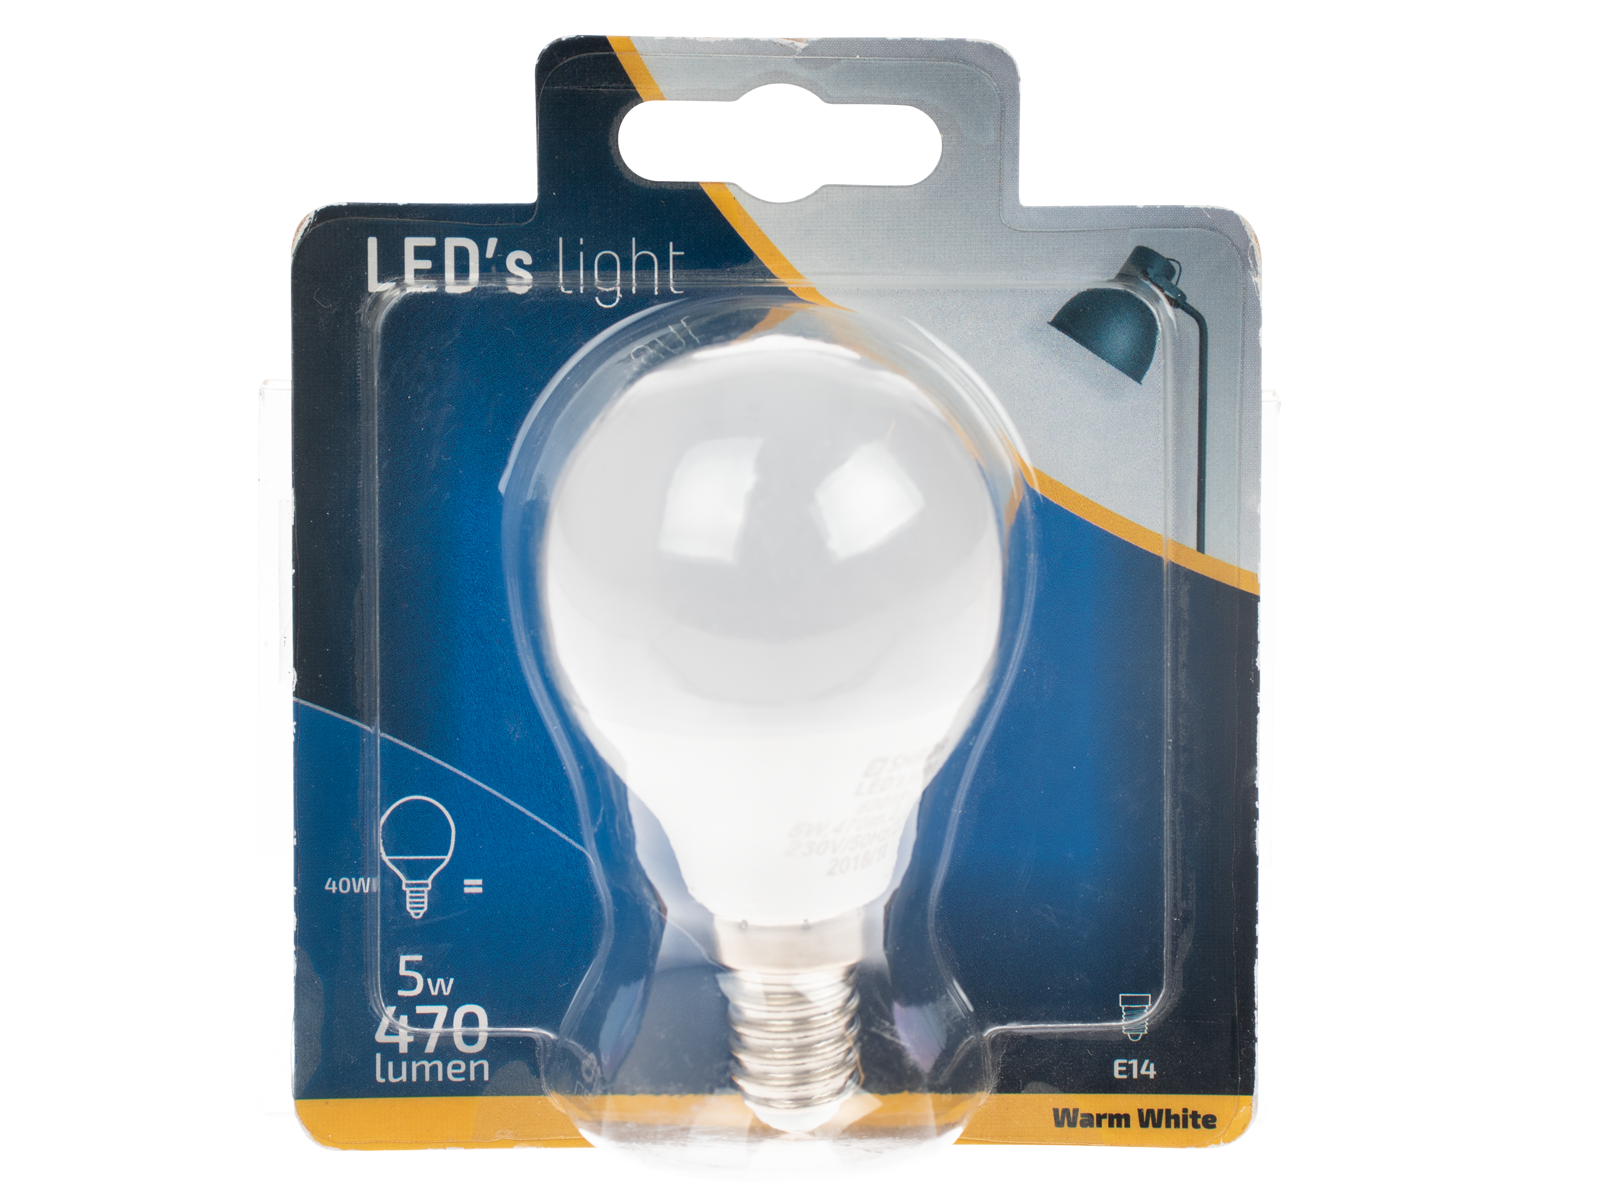 LED lamp E14 470 lumen kopen? - Wibra Nederland - Dat goed.